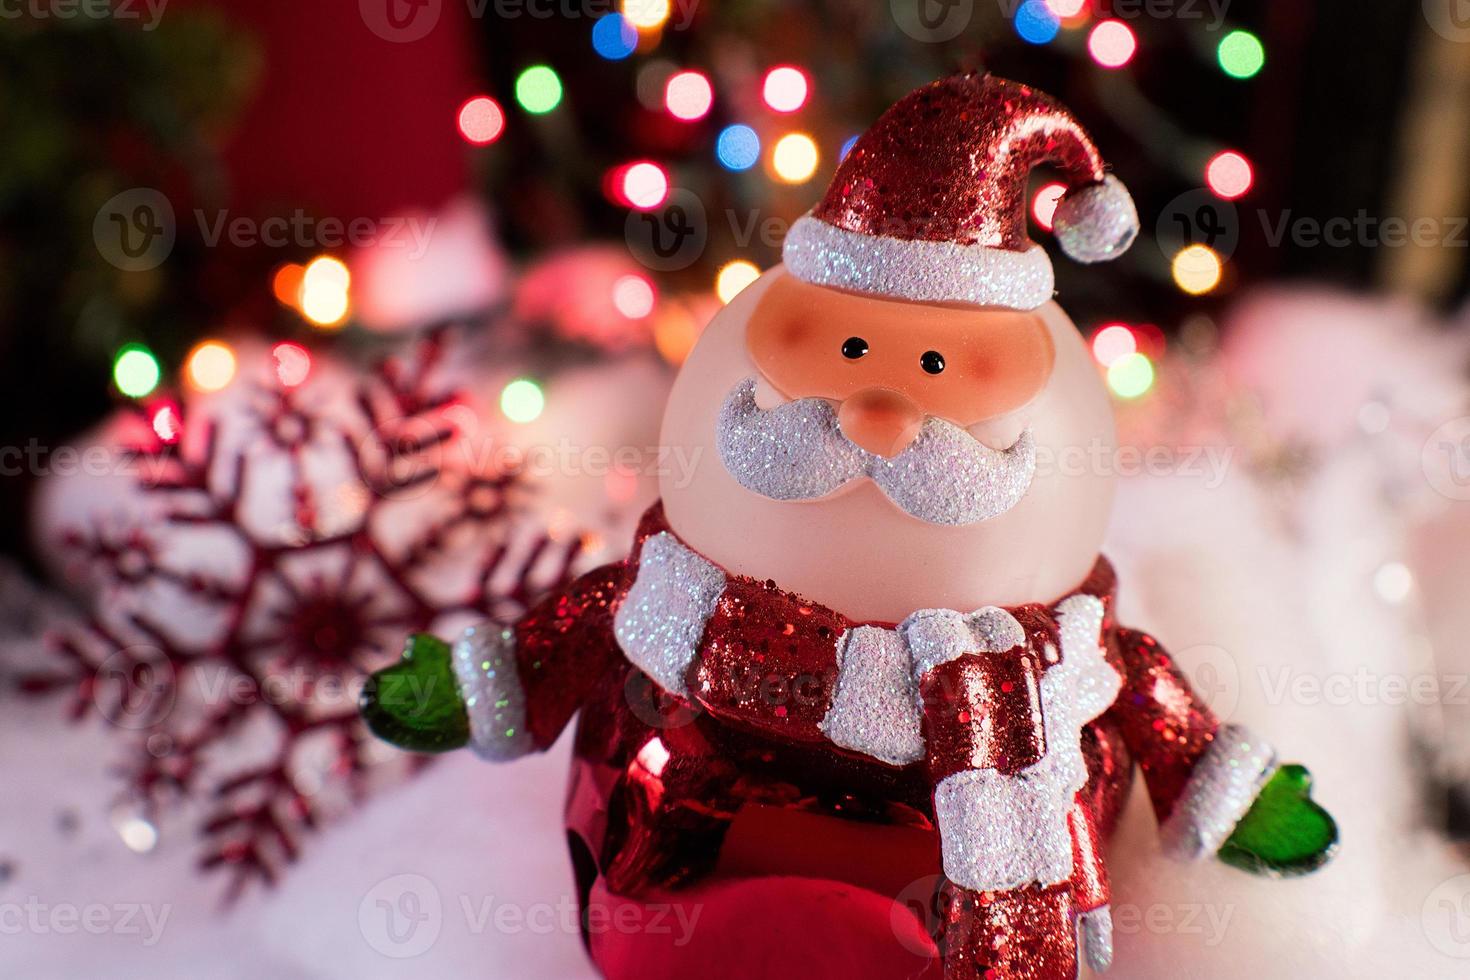 decoraciones navideñas de santa en luces navideñas festivas foto